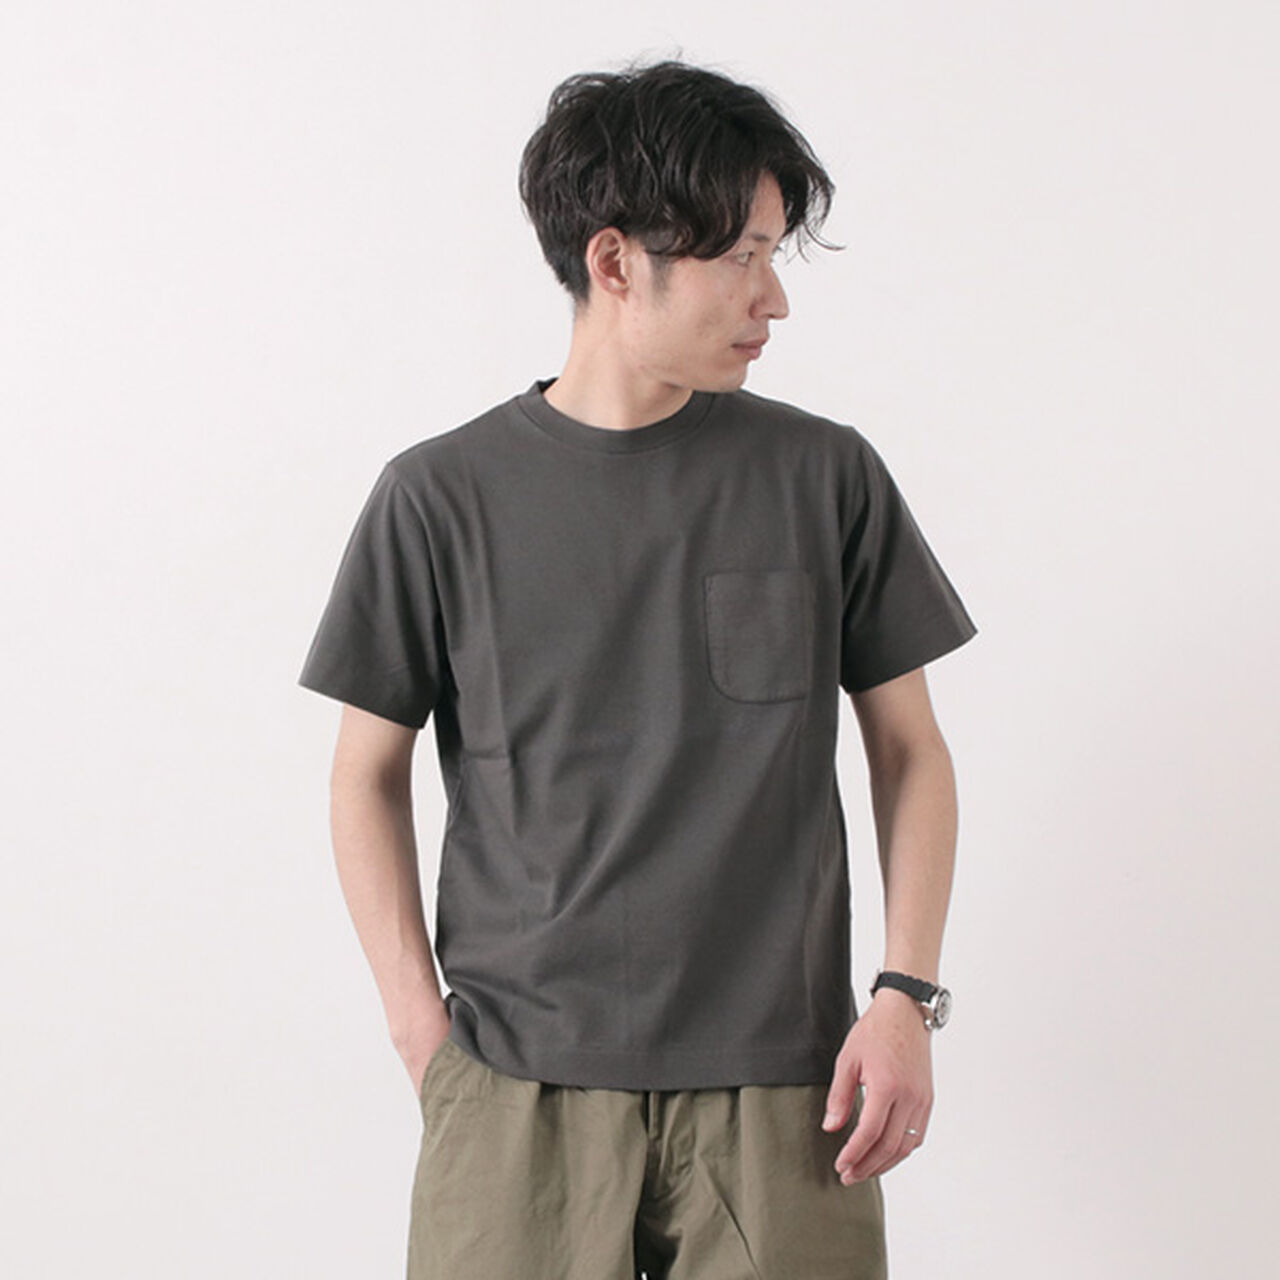 Extra Soft Standard Pocket T-Shirt,Charcoal, large image number 0